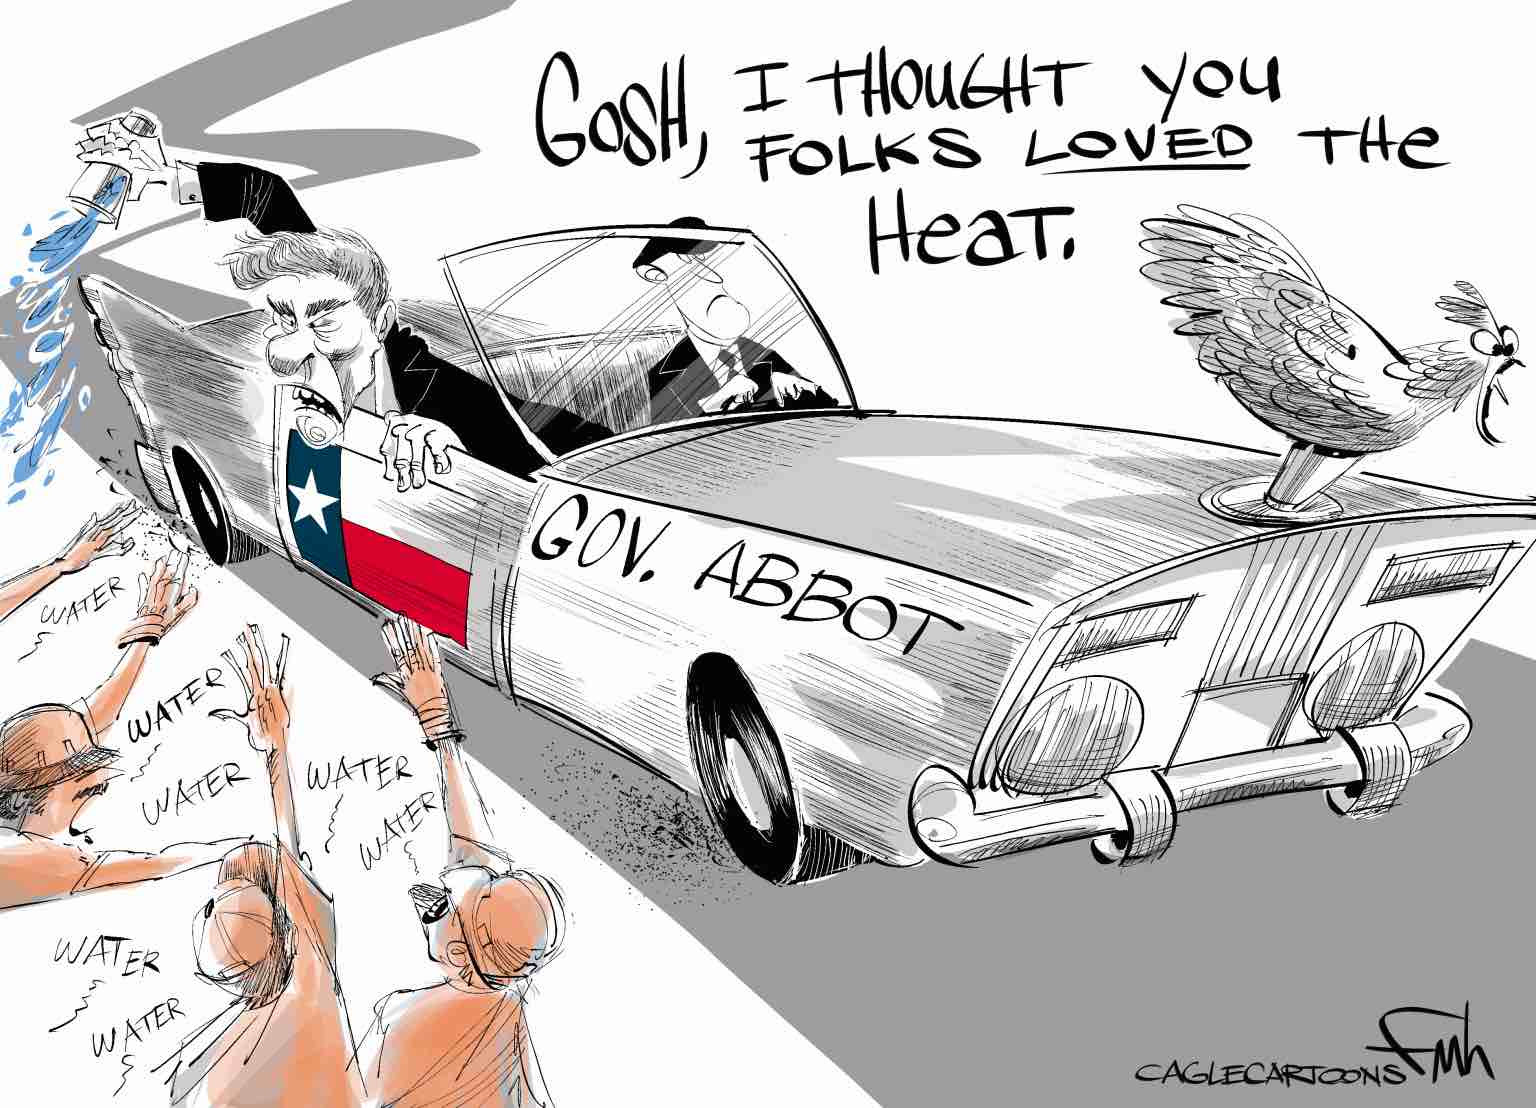 Texas Republicans and Greg Abbott make heatwaves deadlier